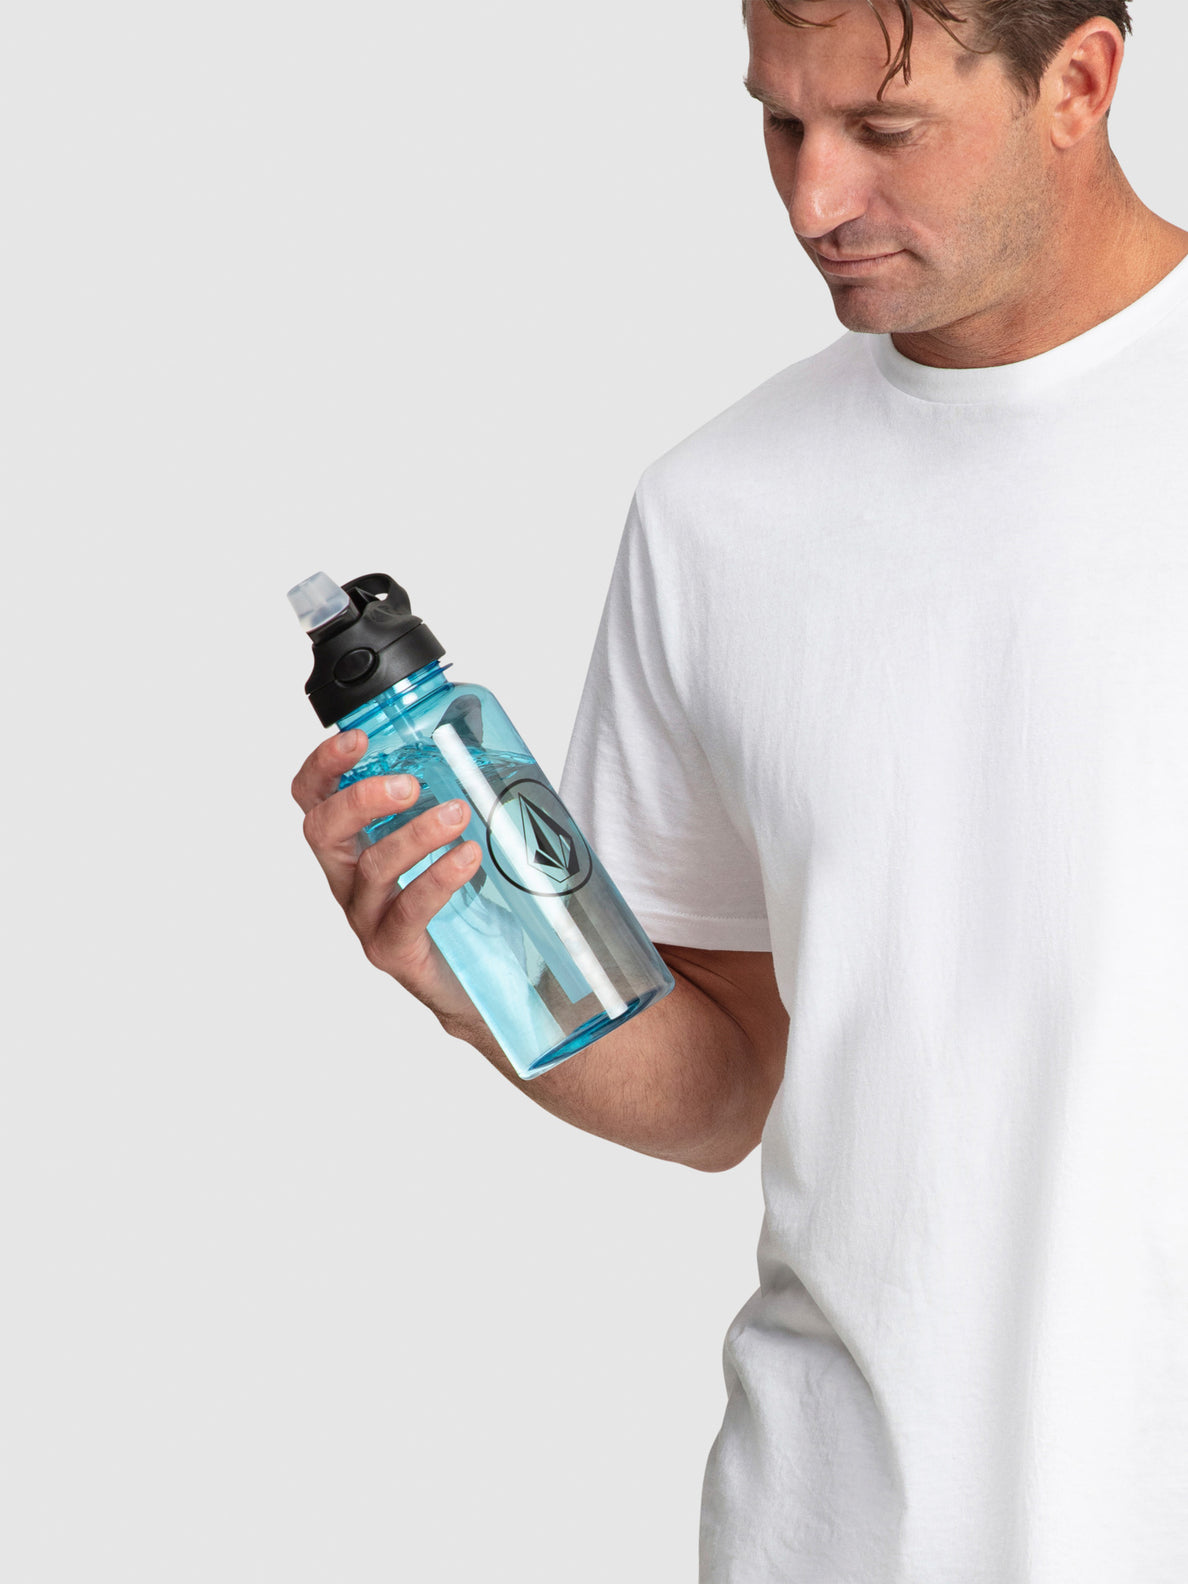 Hydrostone Water Bottle - Blue Black